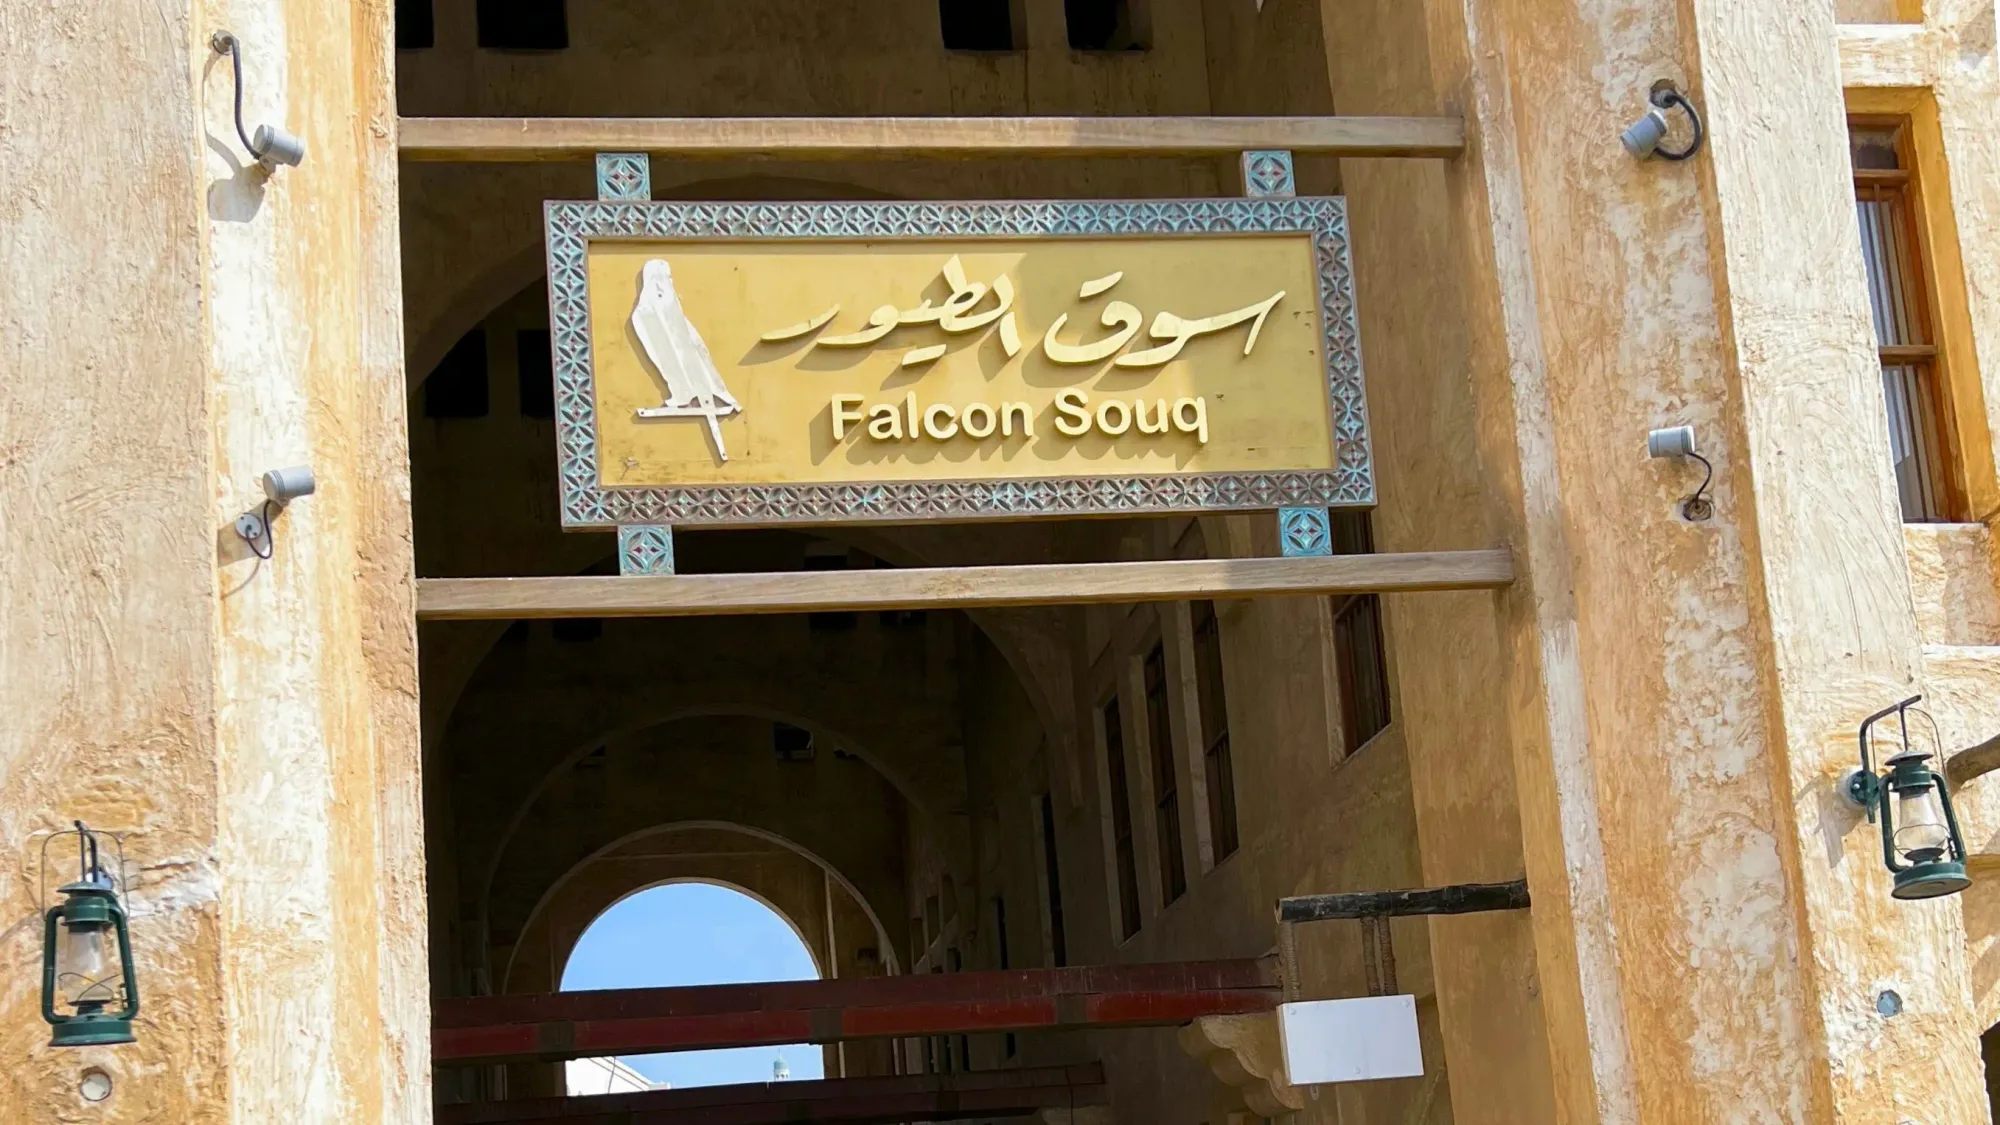 Golden sign reading "Falcon Soup"